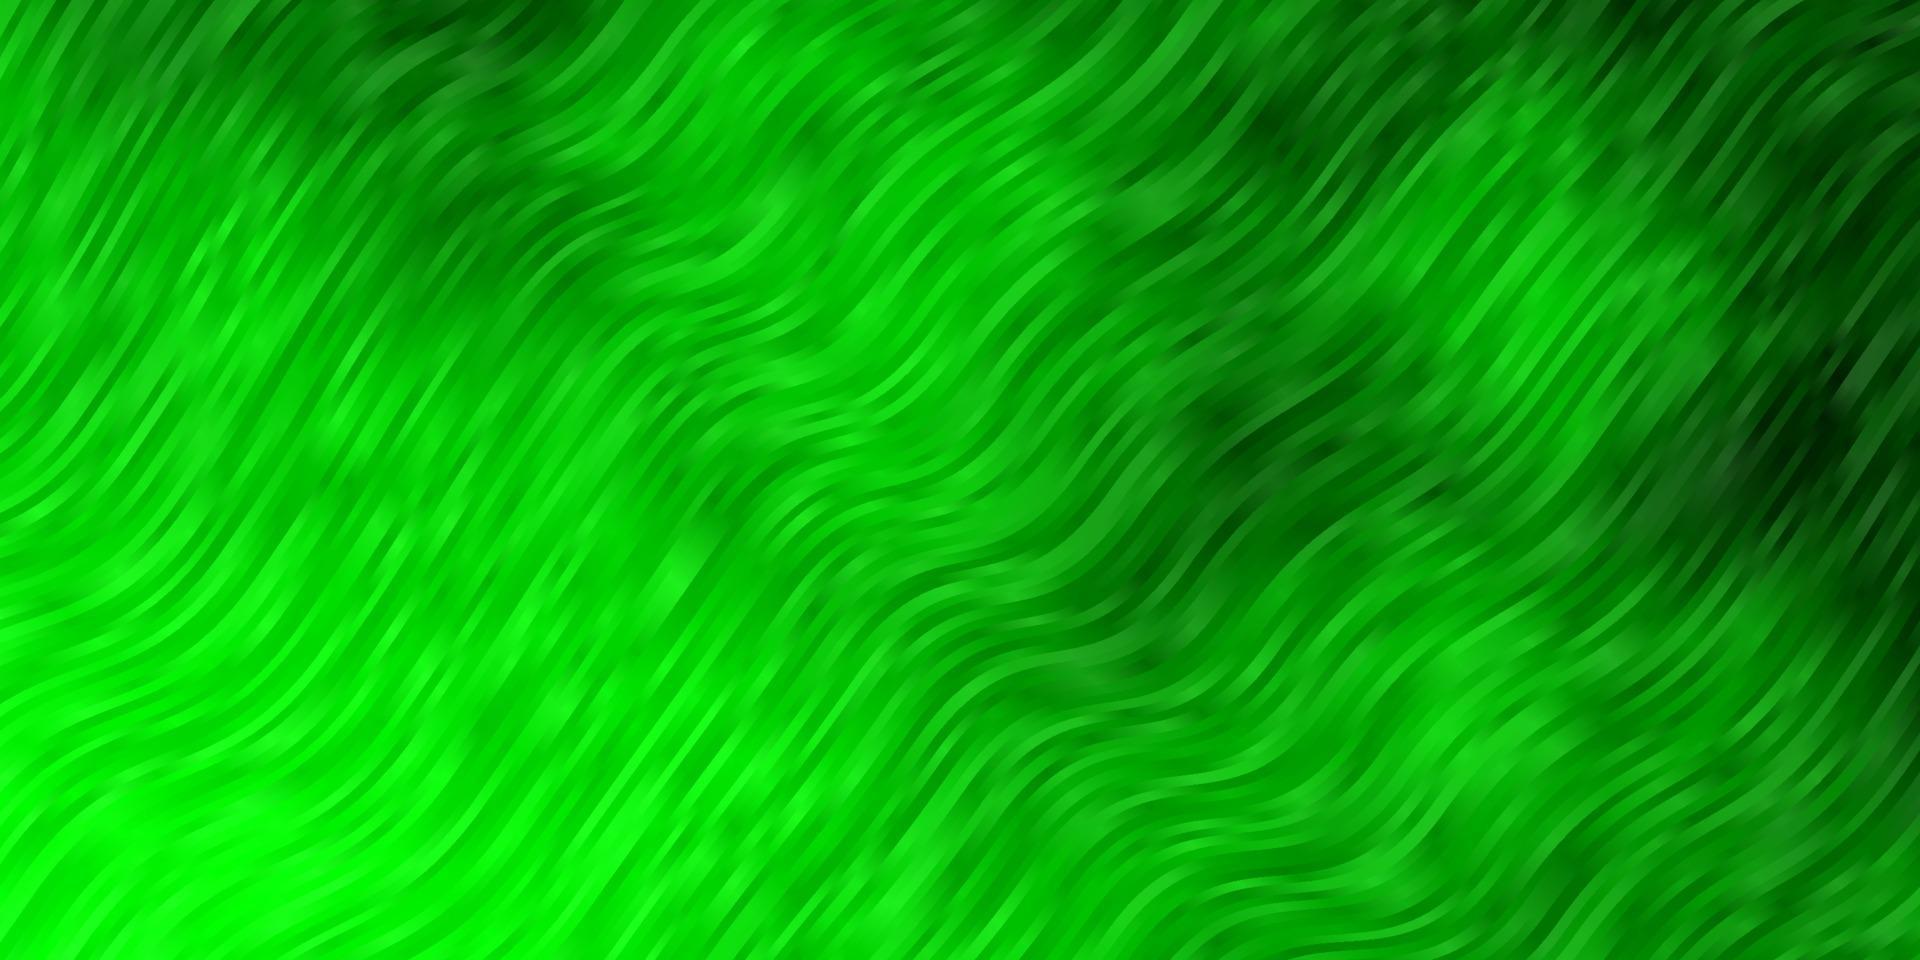 ljusgrön vektormall med linjer. vektor